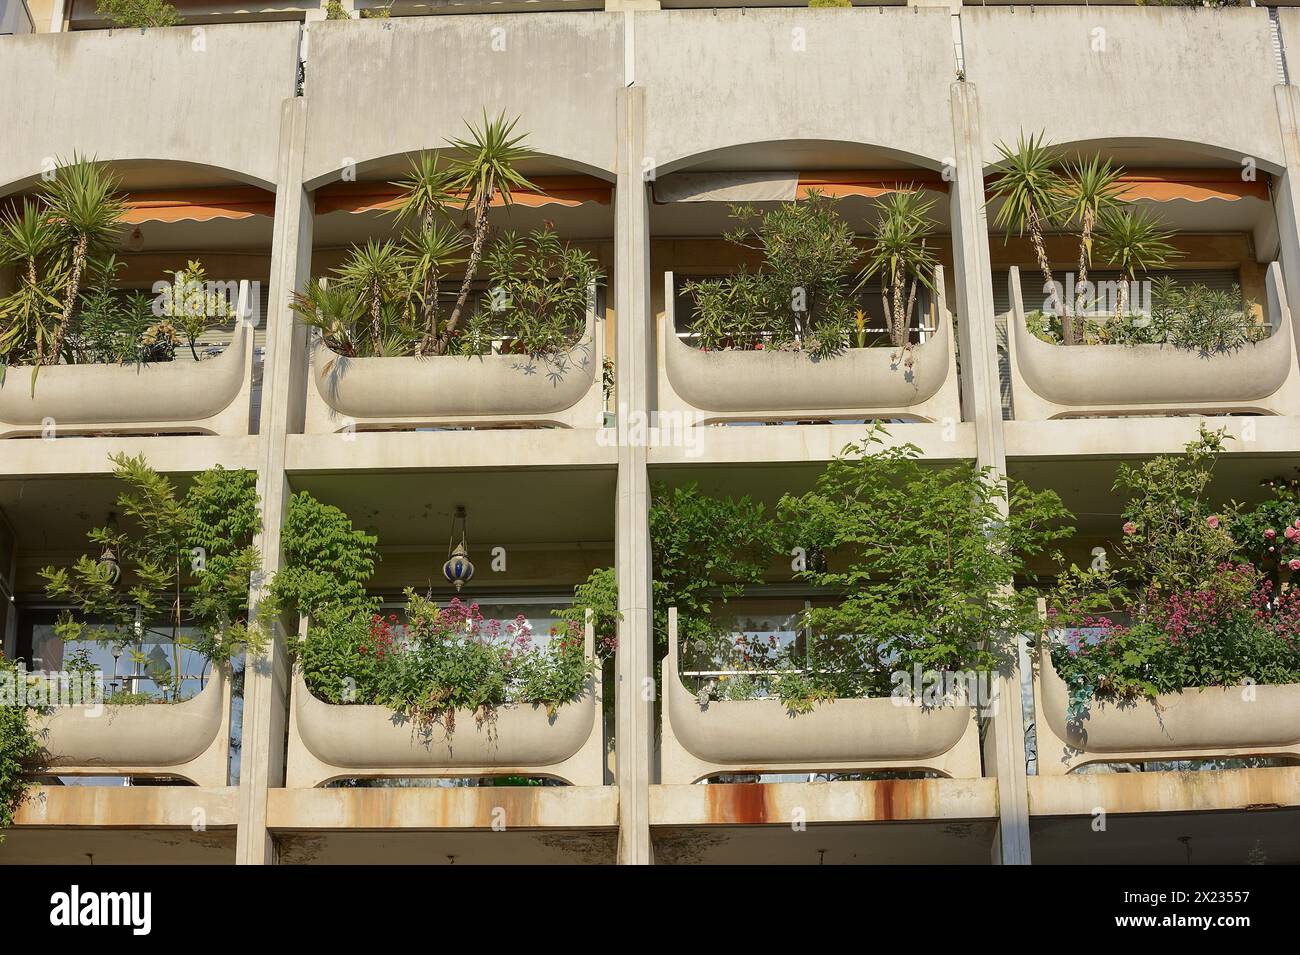 Façade de maison avec balcons verdoyants, Avignon, Vaucluse, Provence-Alpes-Côte d'Azur, Sud de la France, France Banque D'Images